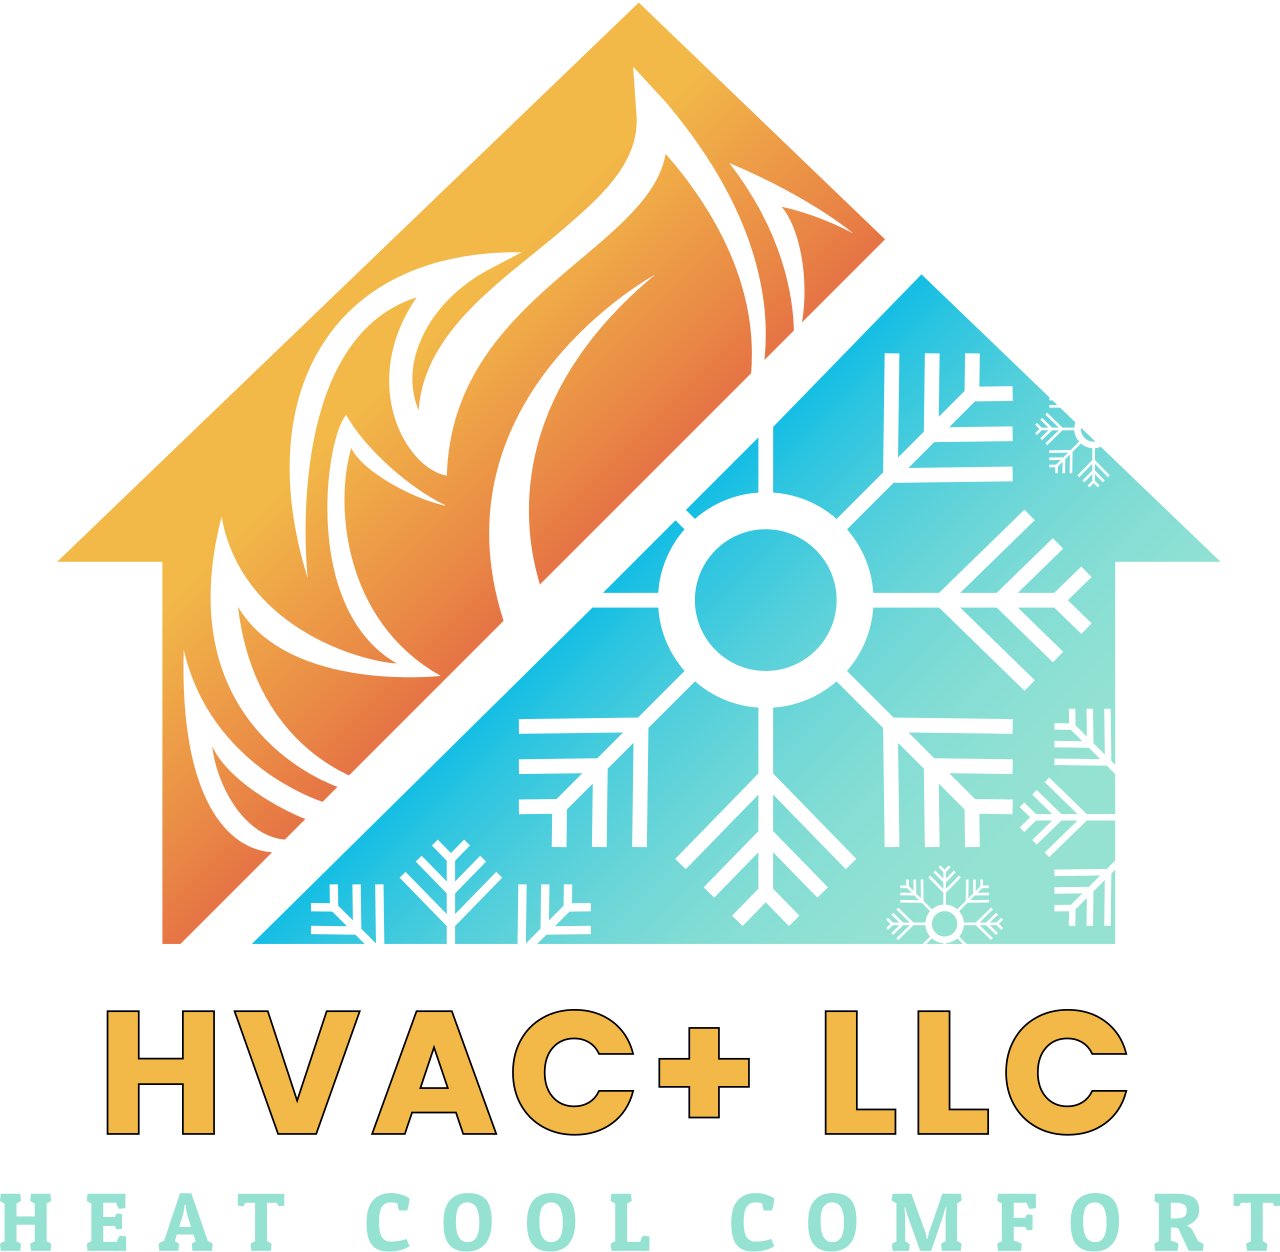 HVAC+ LLC 's logo